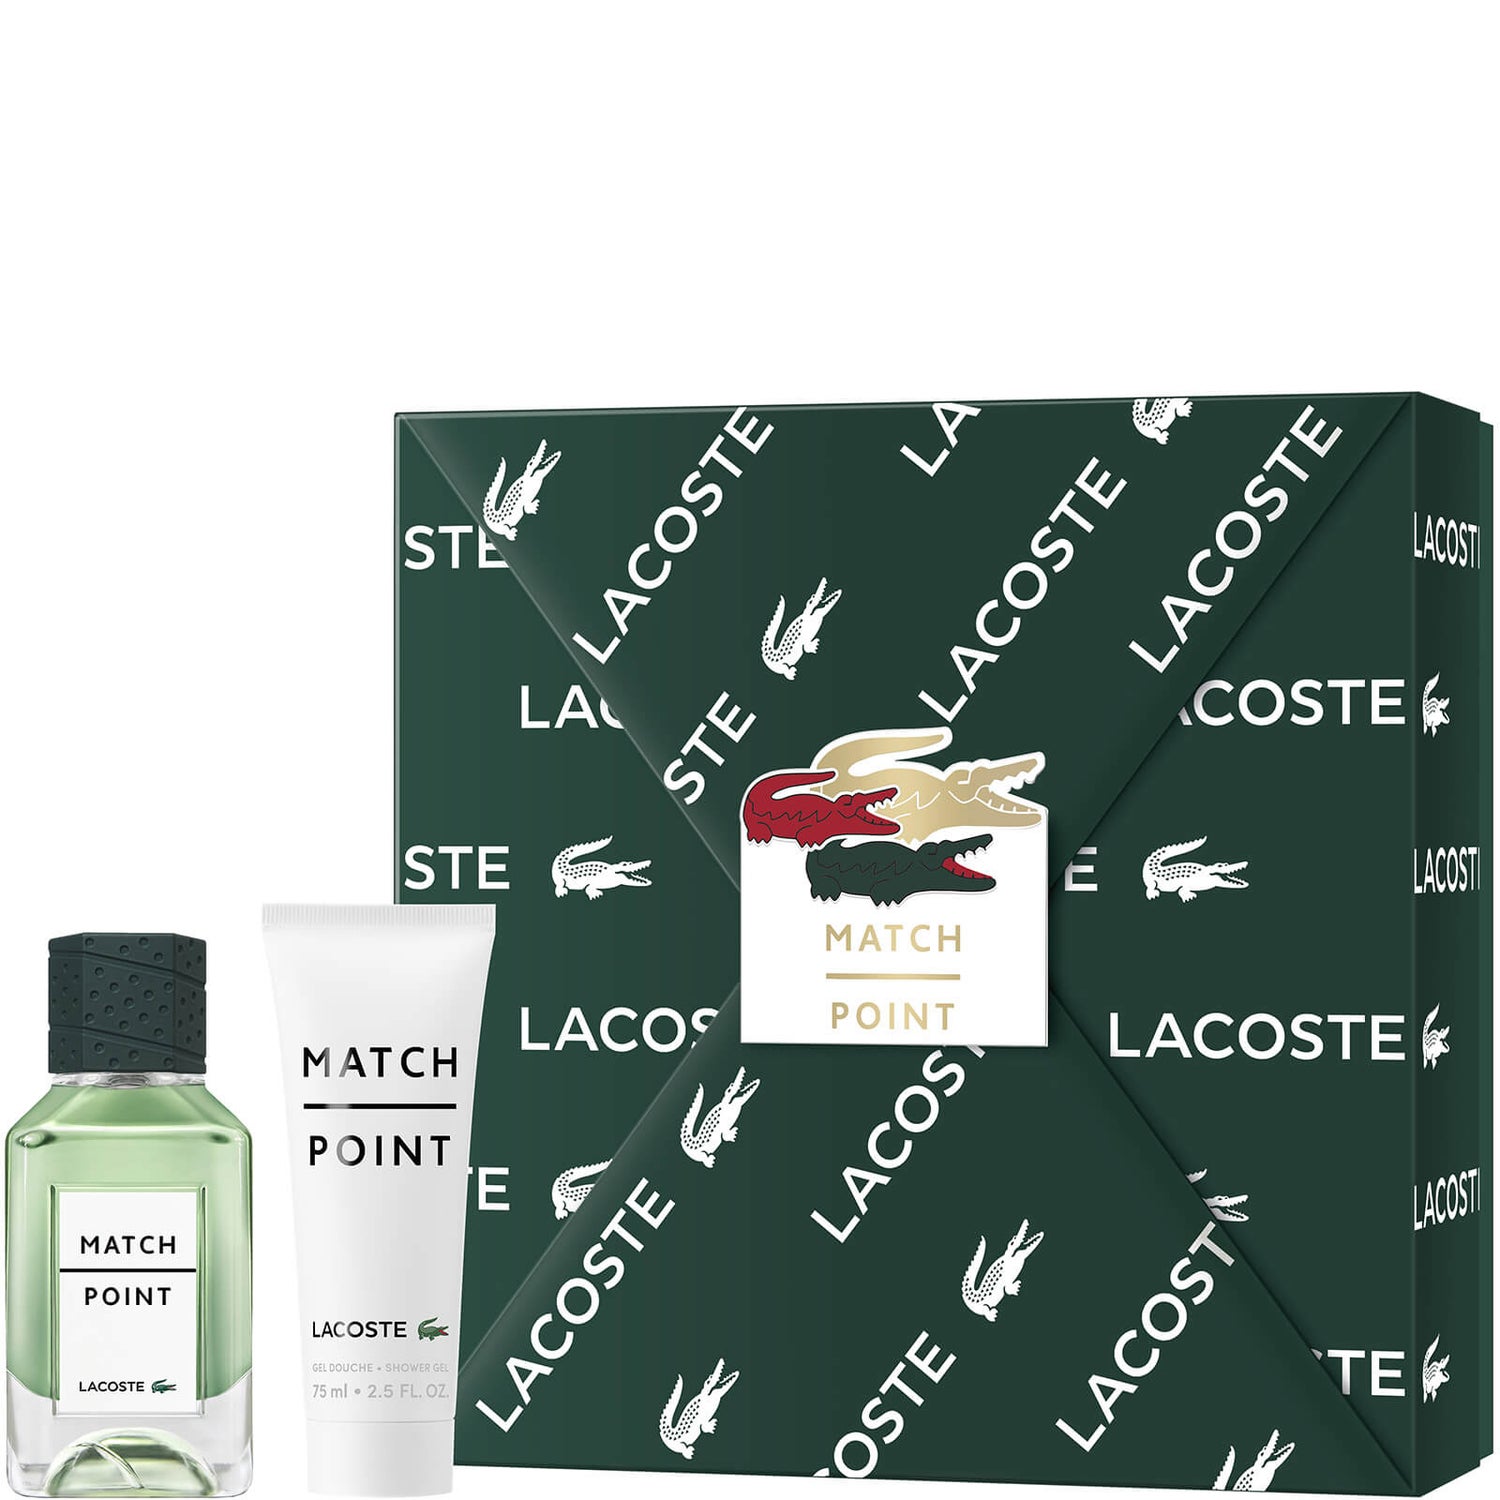 Lacoste Match Point For Him Eau De Toilette 50ml Gift Set (Worth £57.00)